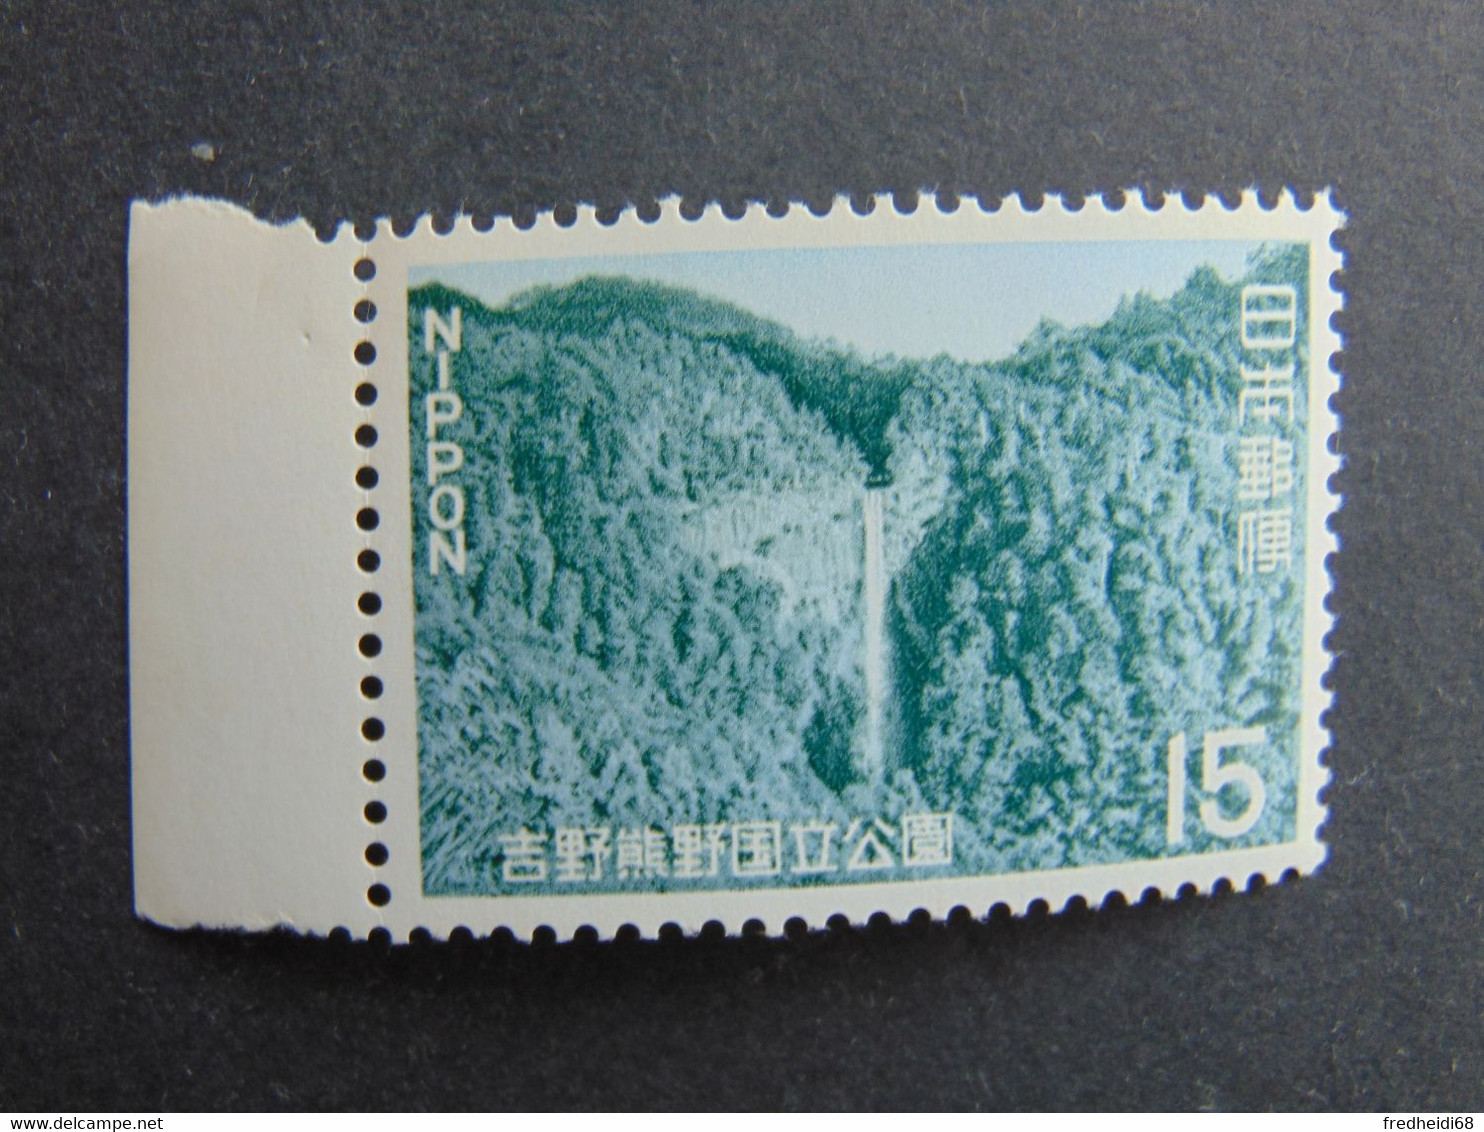 Très bel ensemble de 14 timbres des années 60/70 en qualité ** dont 9 bords de feuille